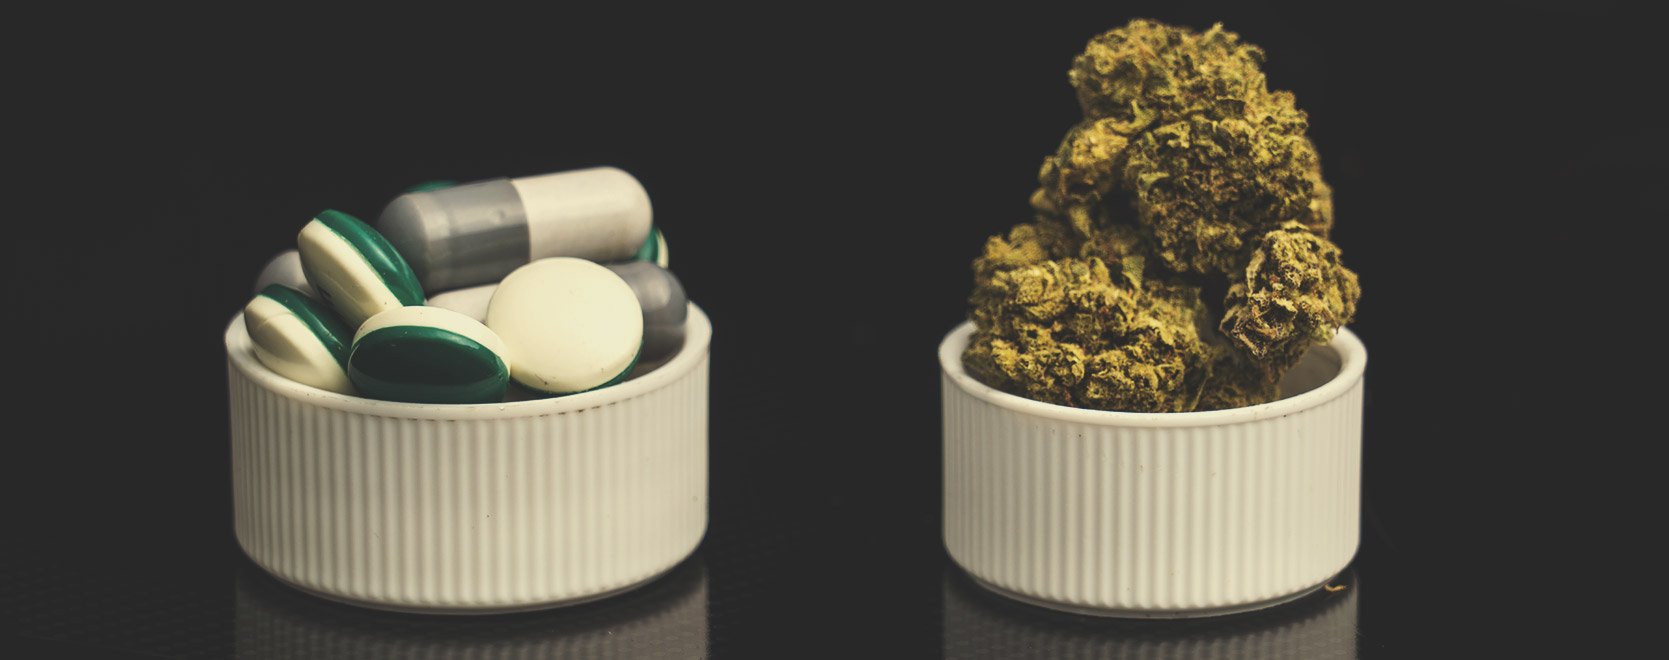 Que se passe-t-il si on combine des opioïdes avec du cannabis ?